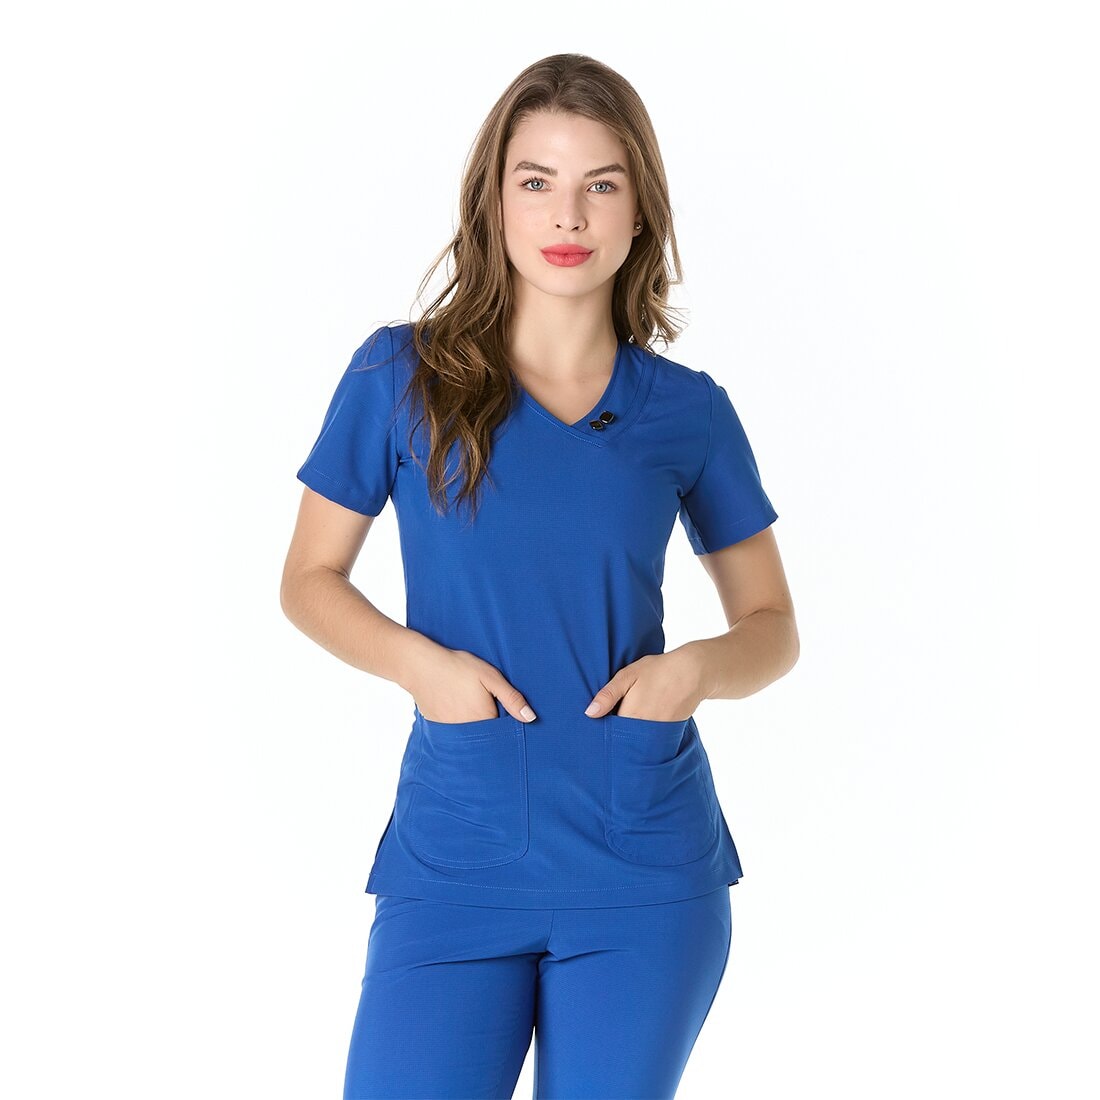 Mujer vistiendo casaca sanitaria azul con cuello en "V" y tela spandex